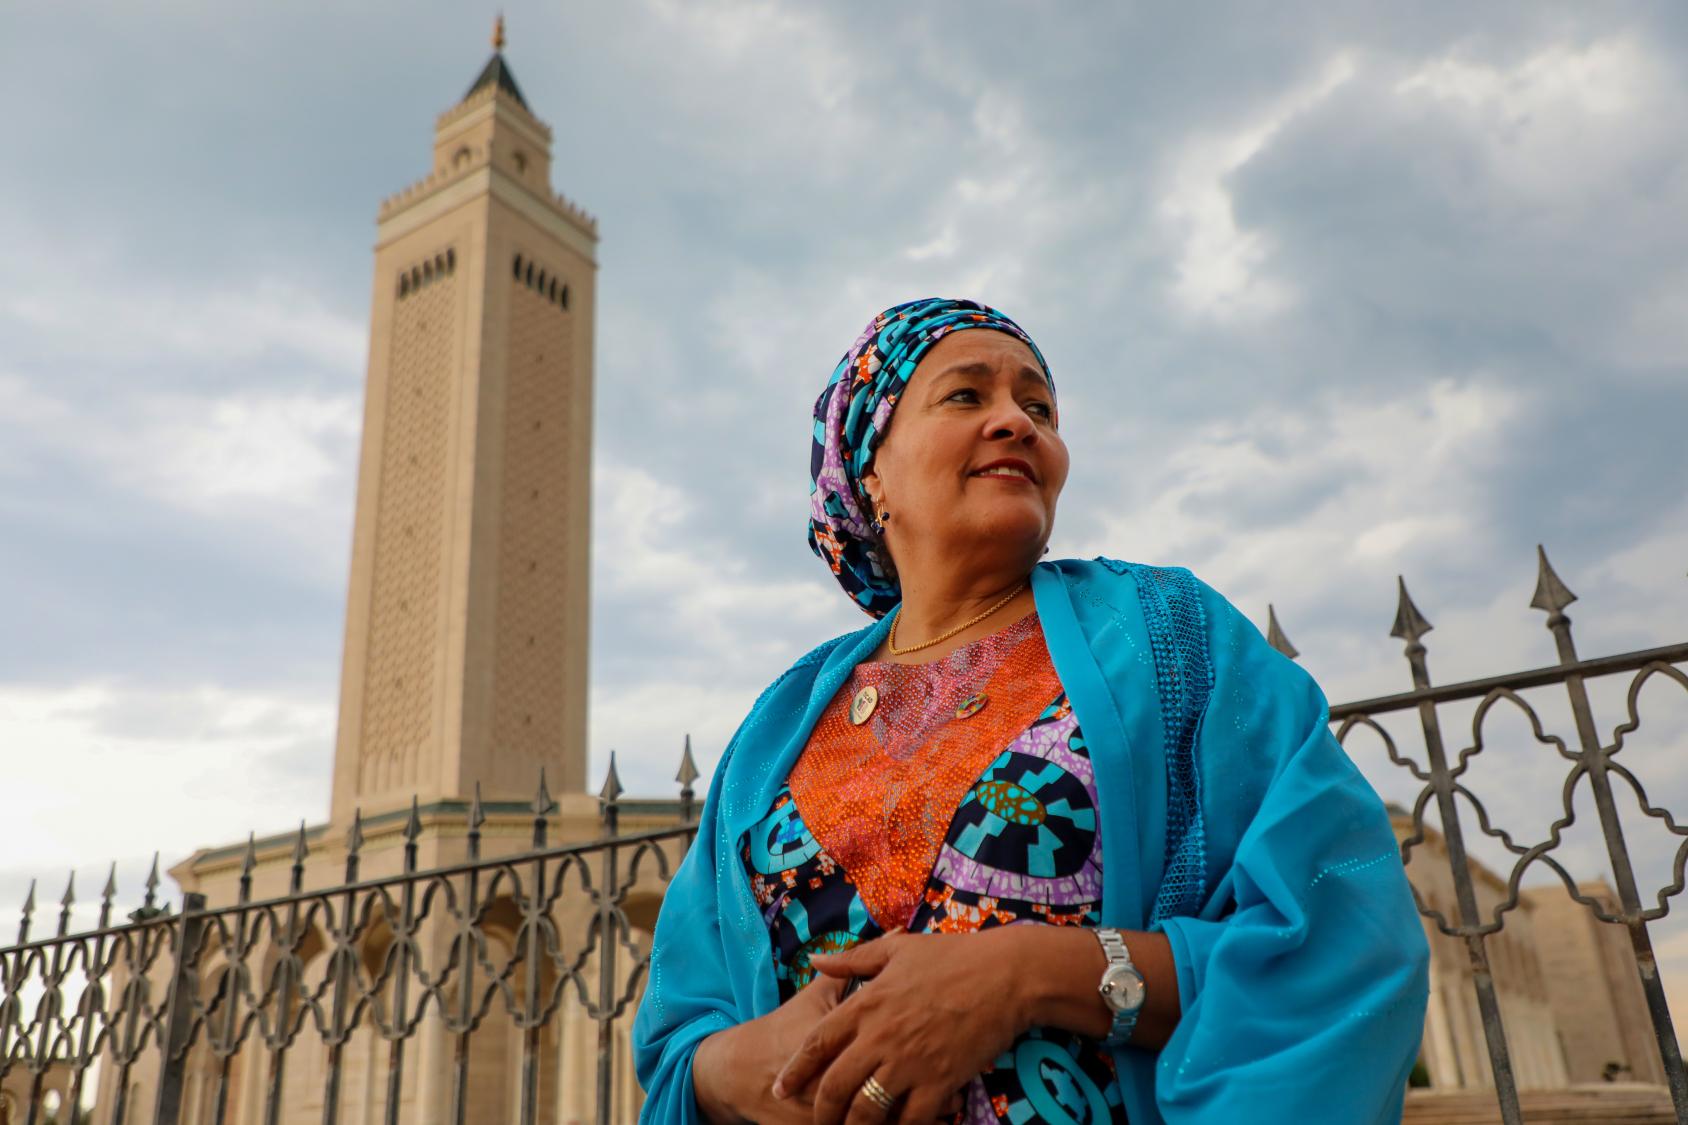 联合国常务副秘书长阿米娜·穆罕默德出席突尼斯市举行的第八届东京非洲发展会议期间，参观了突尼斯市郊的世界著名的布匿首都迦太基，她在紧邻达穆斯·埃尔·卡里塔大教堂的马里克·伊本·阿纳斯清真寺停留，并领略了突尼斯作为不同文明交汇点的丰富历史。